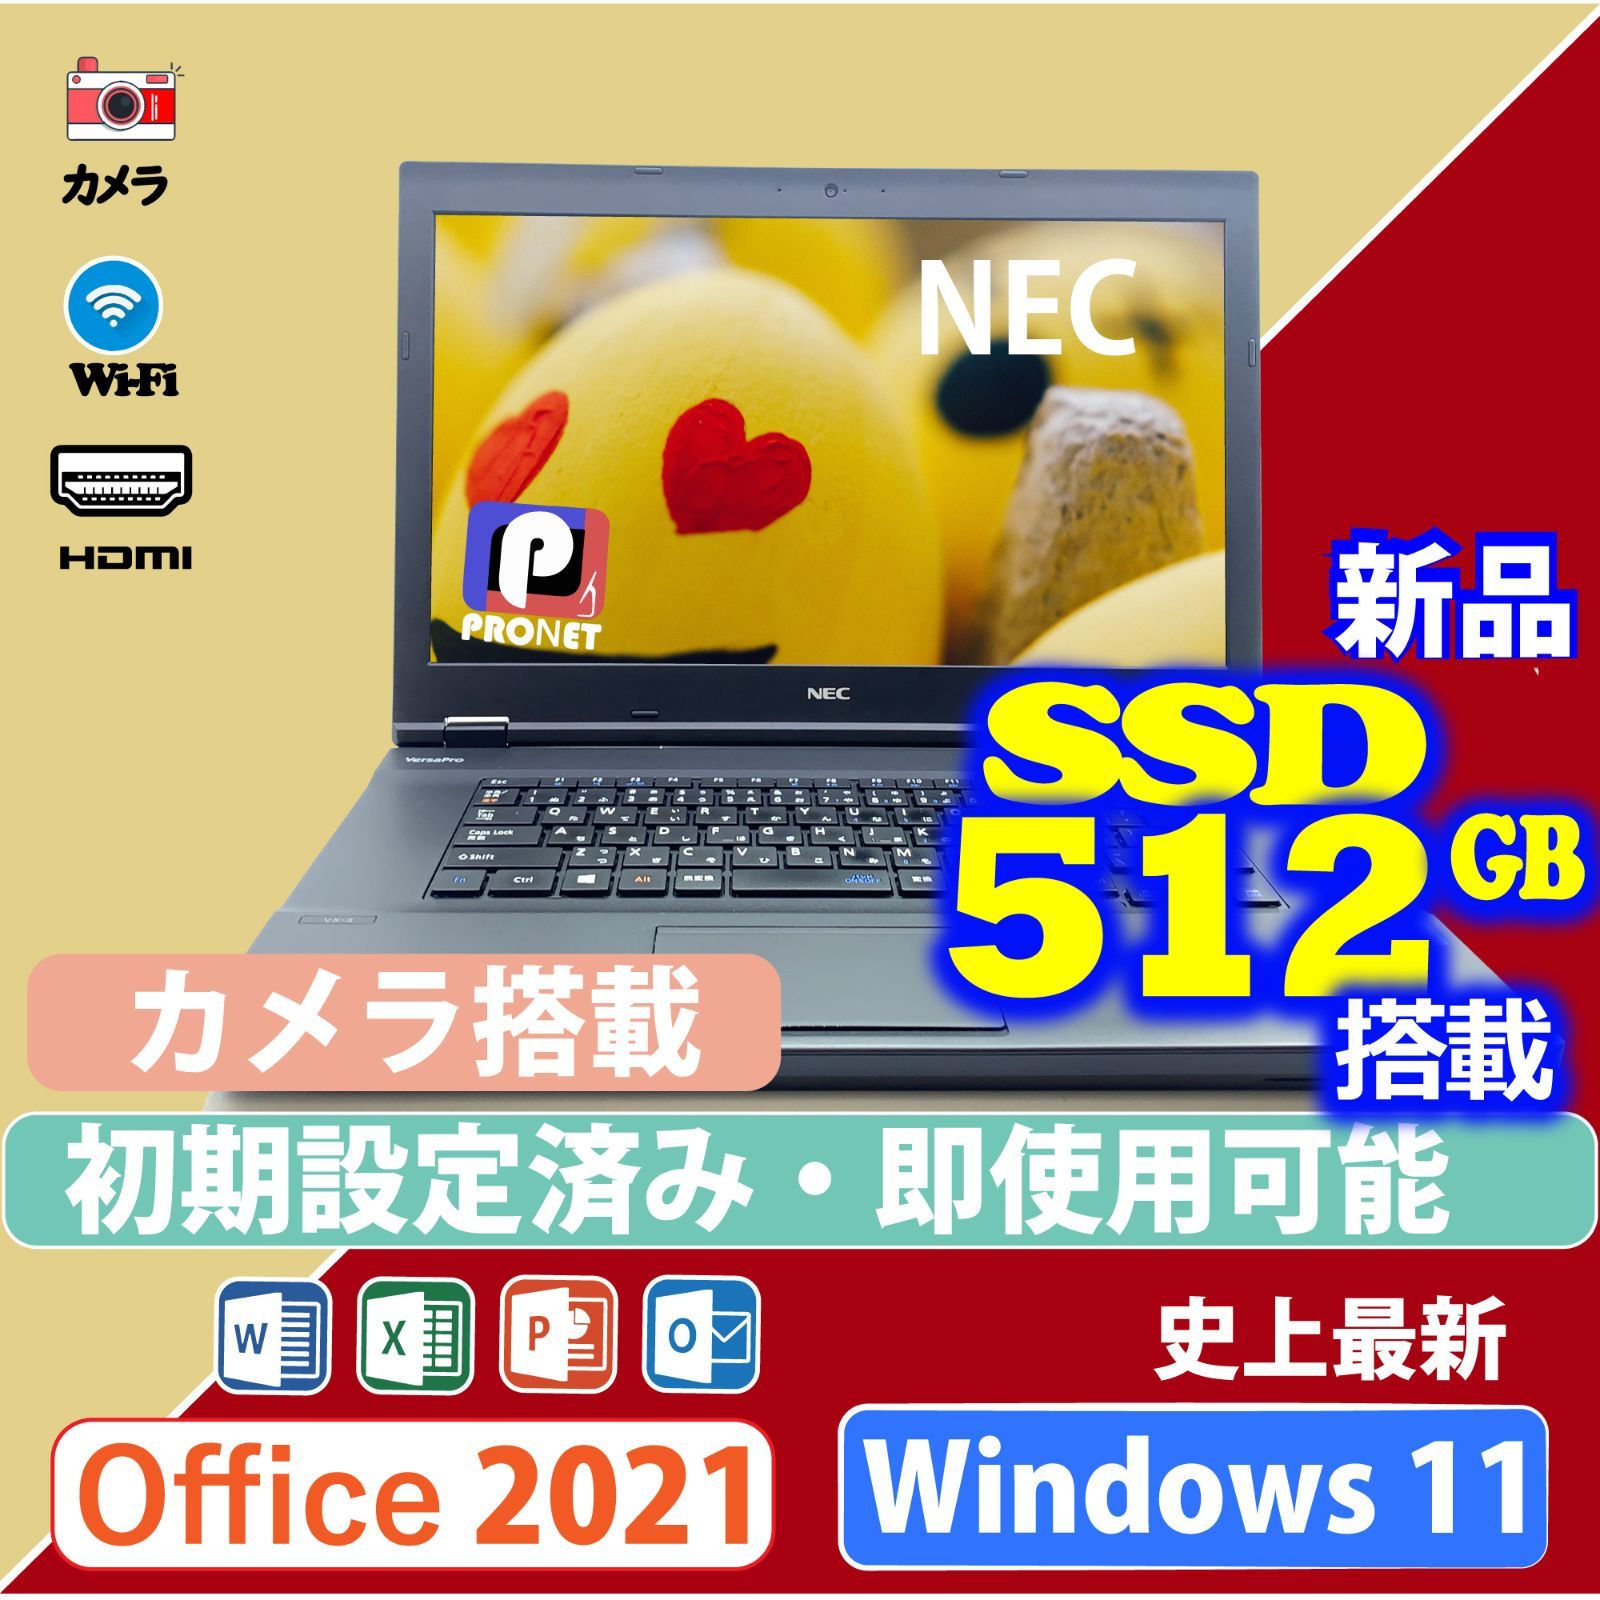 新品SSD512GB Win11 ノートパソコン Word/Excel/PowerPoint 2021 [NEC VX-3] Intel Core  i3 第7世代 15.6型 WiFi HDMI 中古ノートパソコン